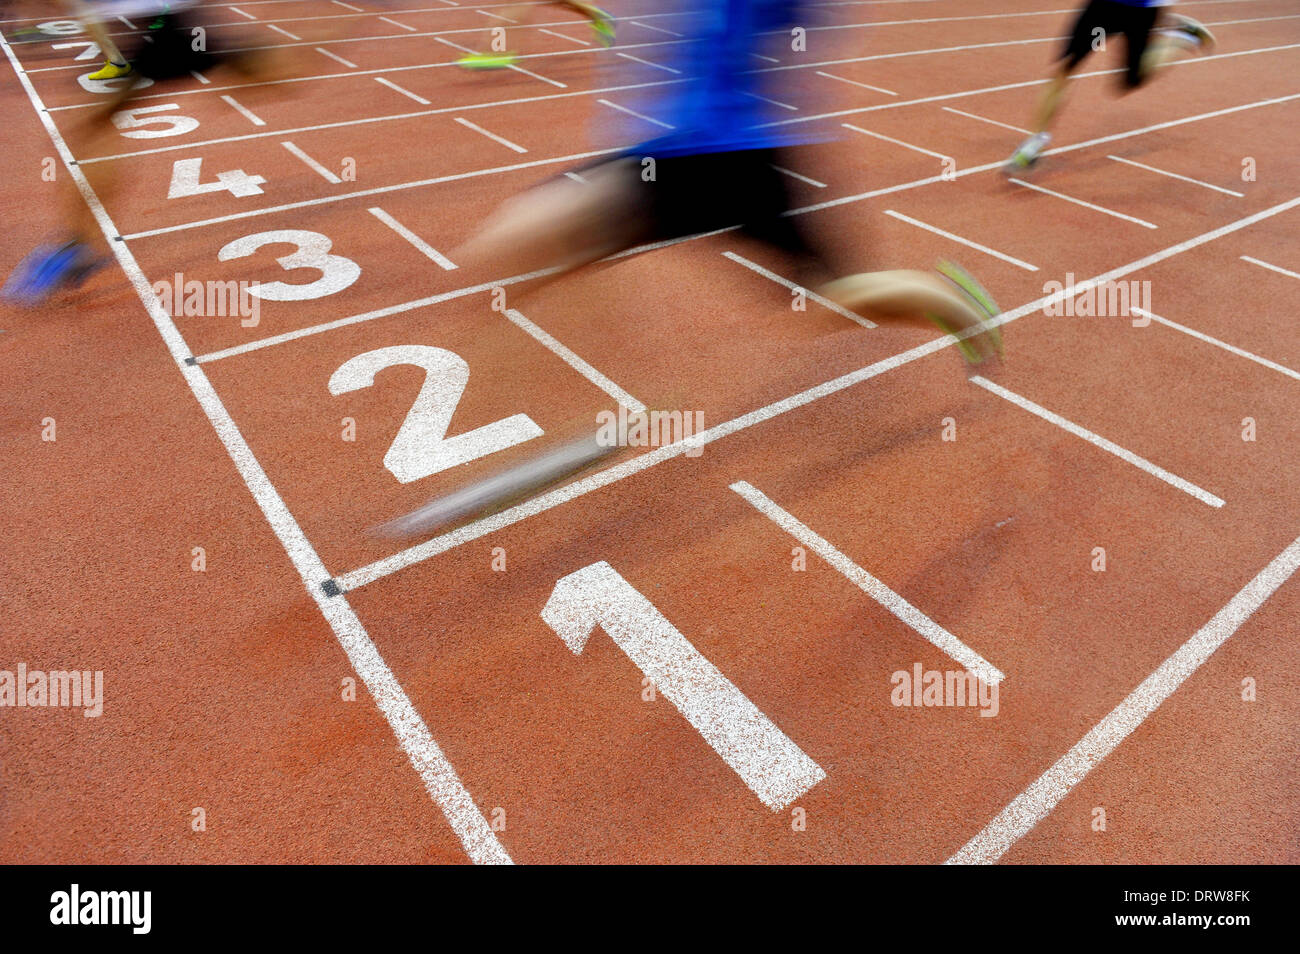 Verschwommene Athleten durch eine langsame Kamera Verschlusszeit sind nach Sprint Track die Ziellinie überqueren. Stockfoto